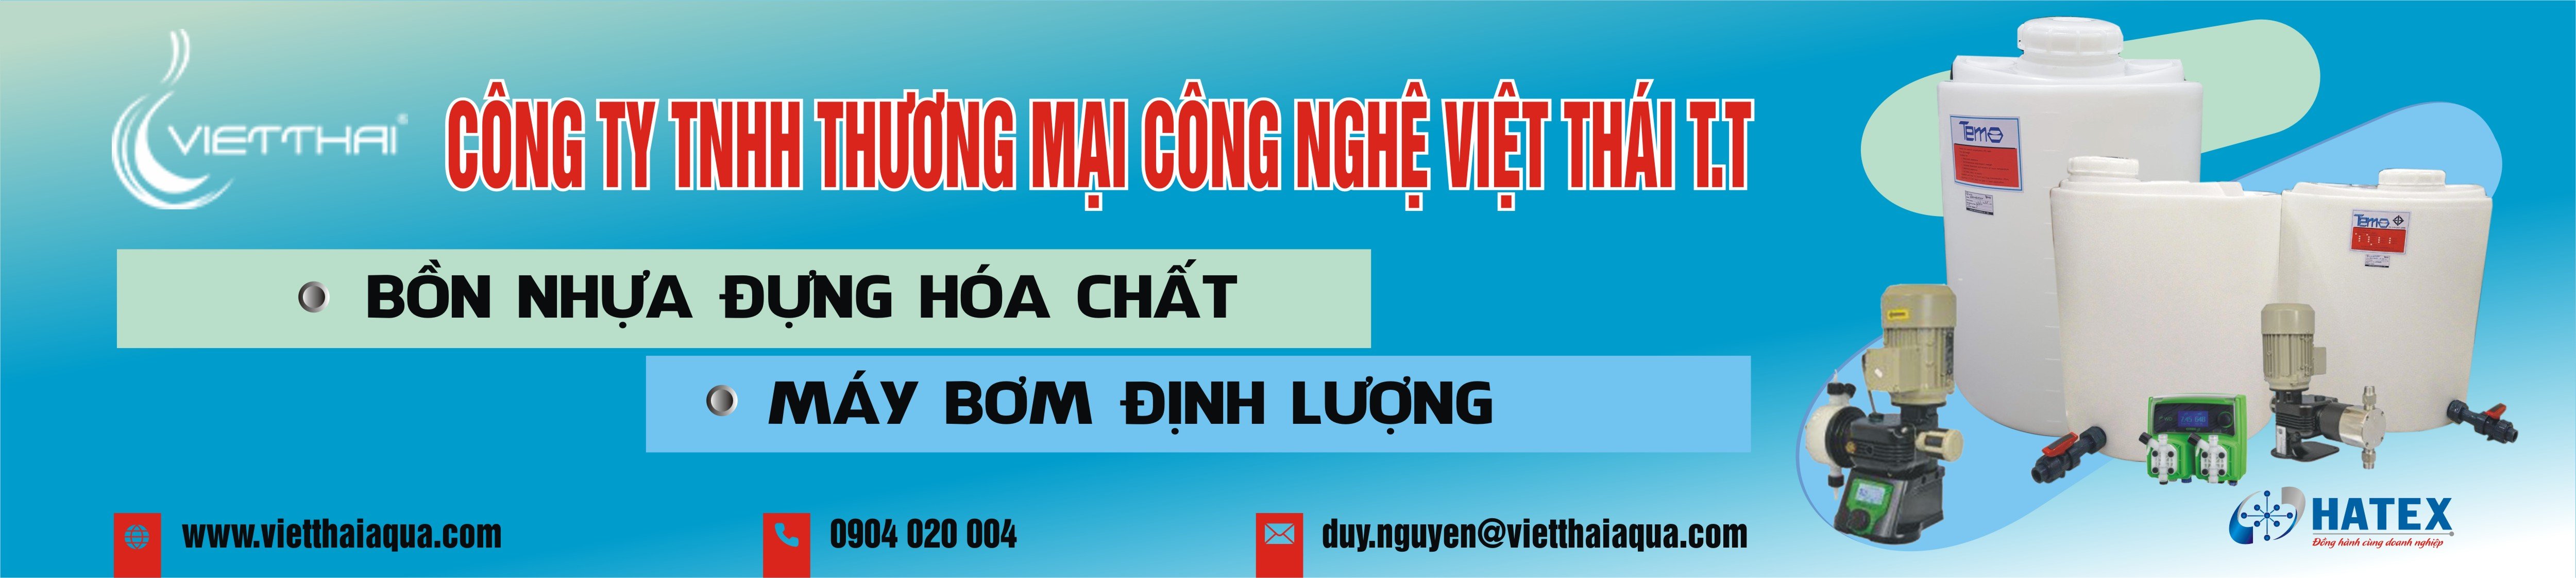 Công ty TNHH Thương mại công nghệ Việt Thái T.T